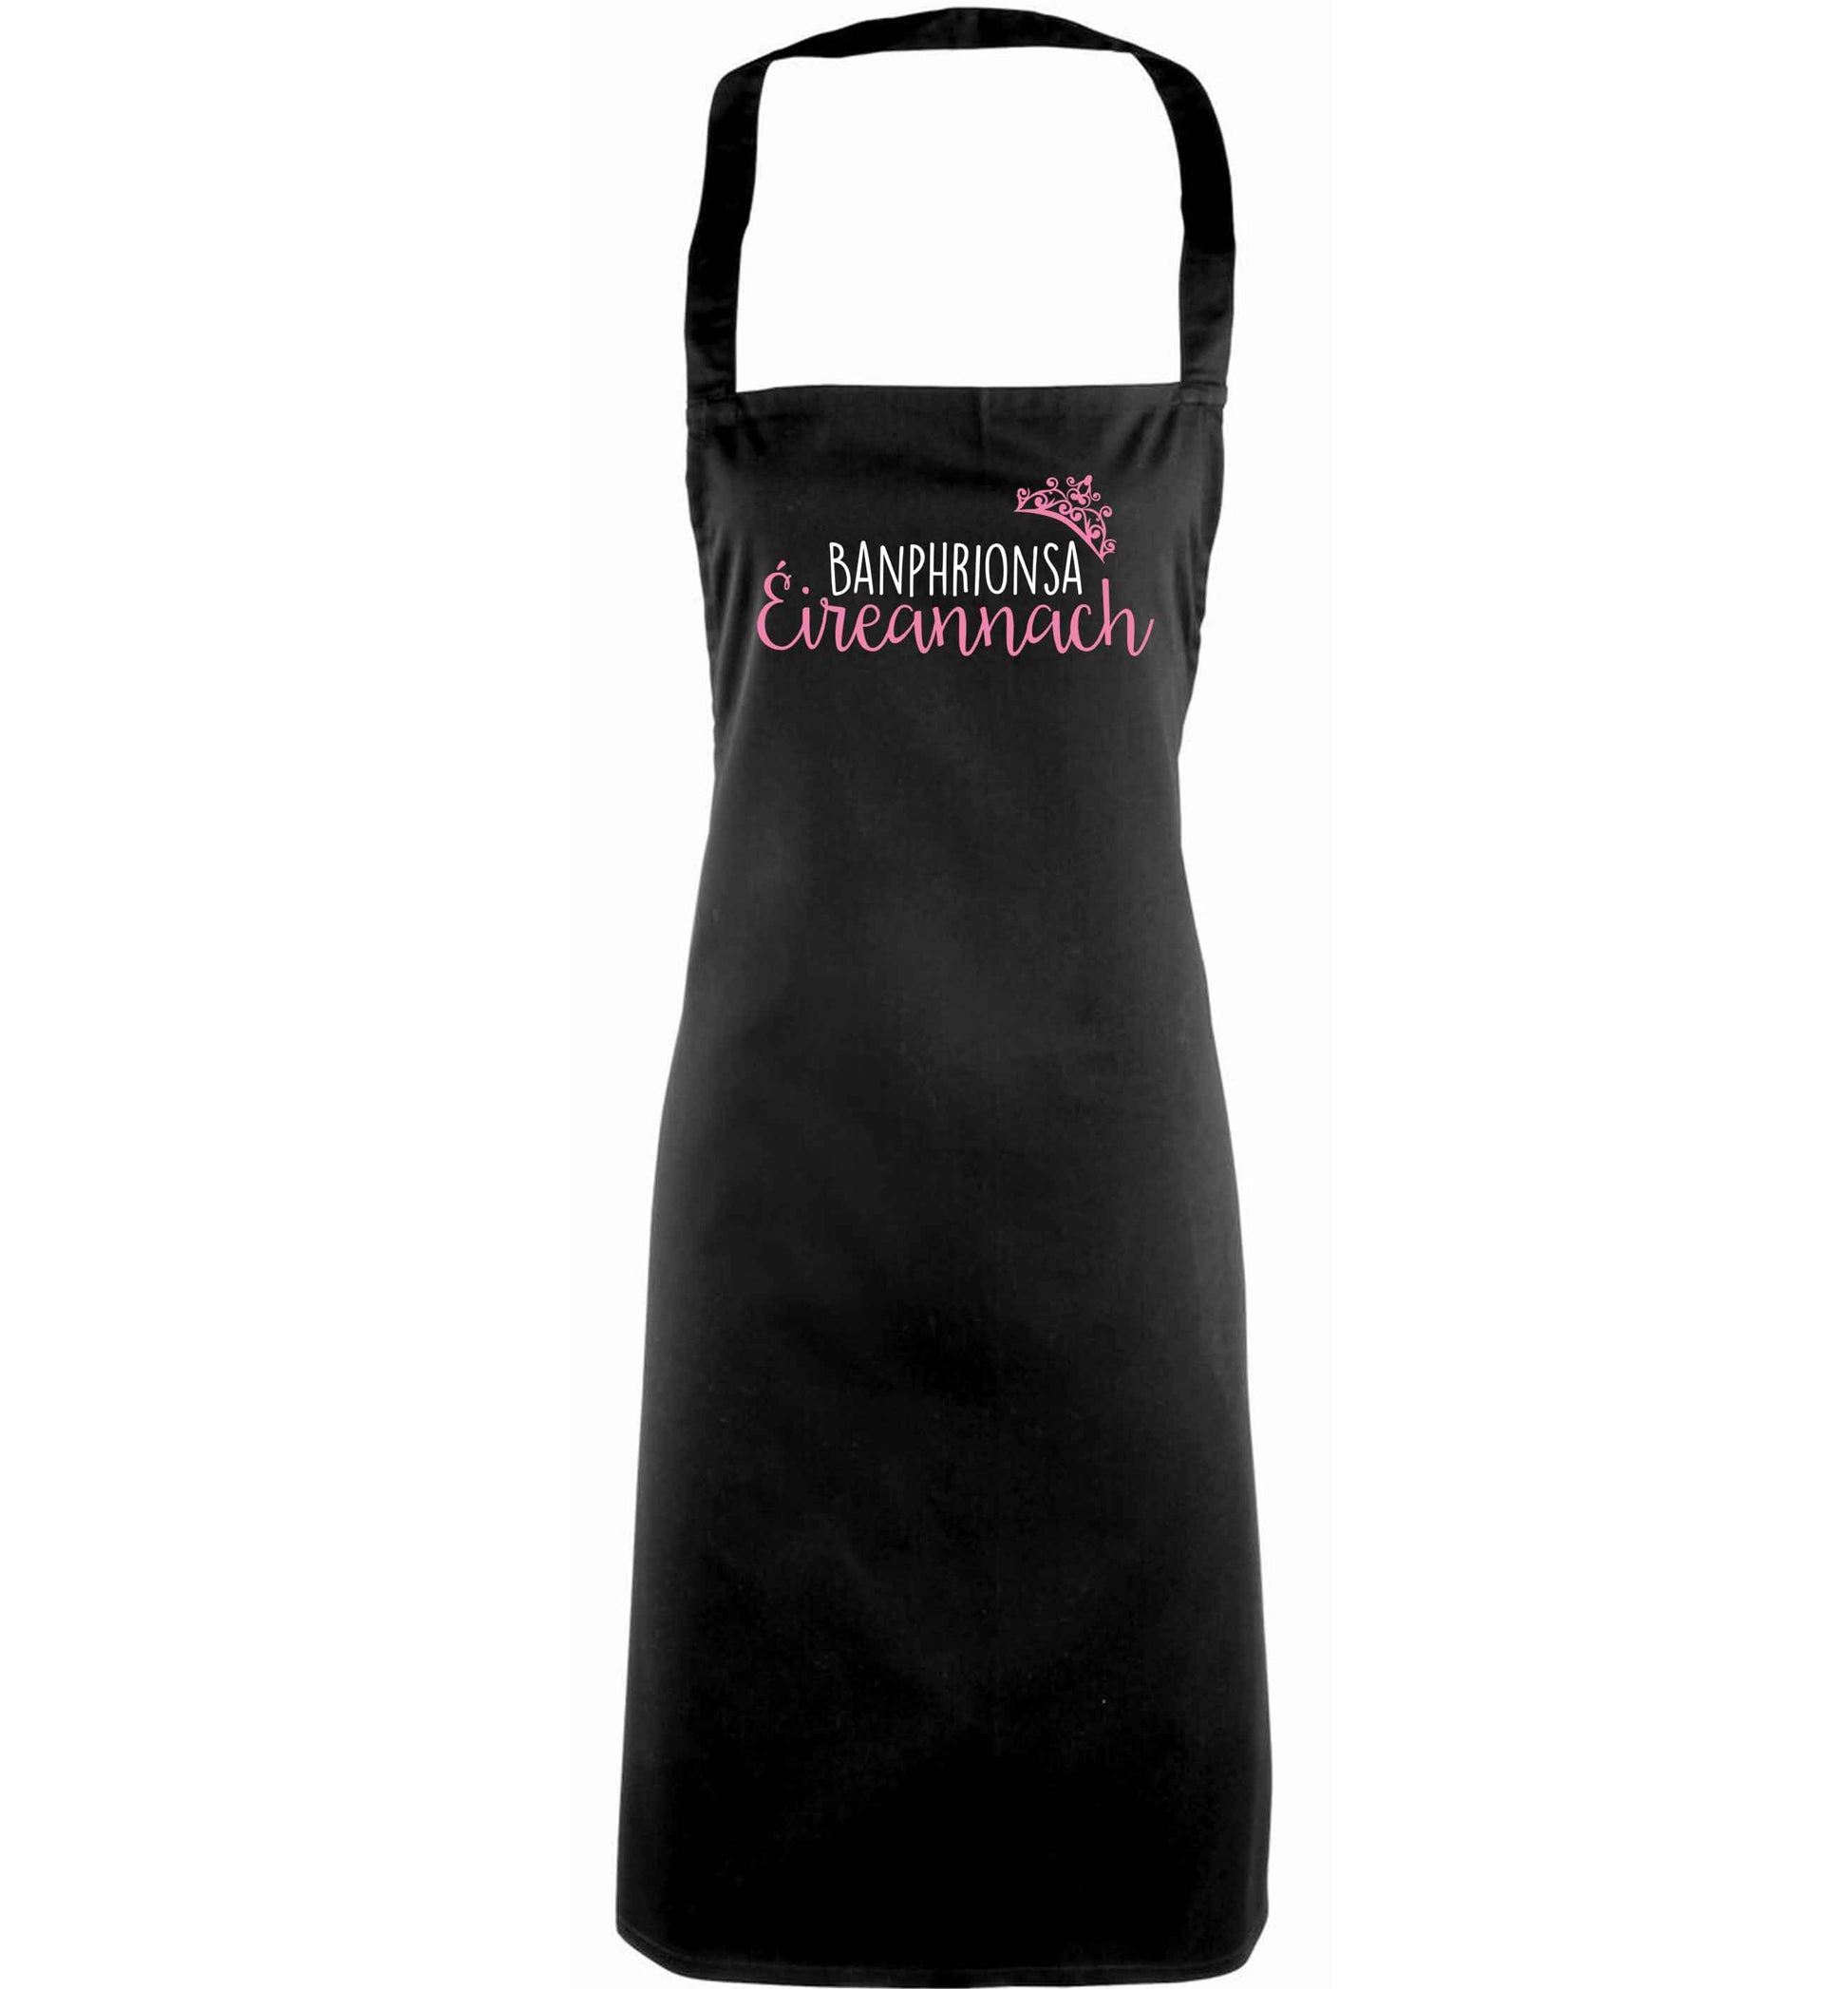 Banphrionsa eireannach adults black apron